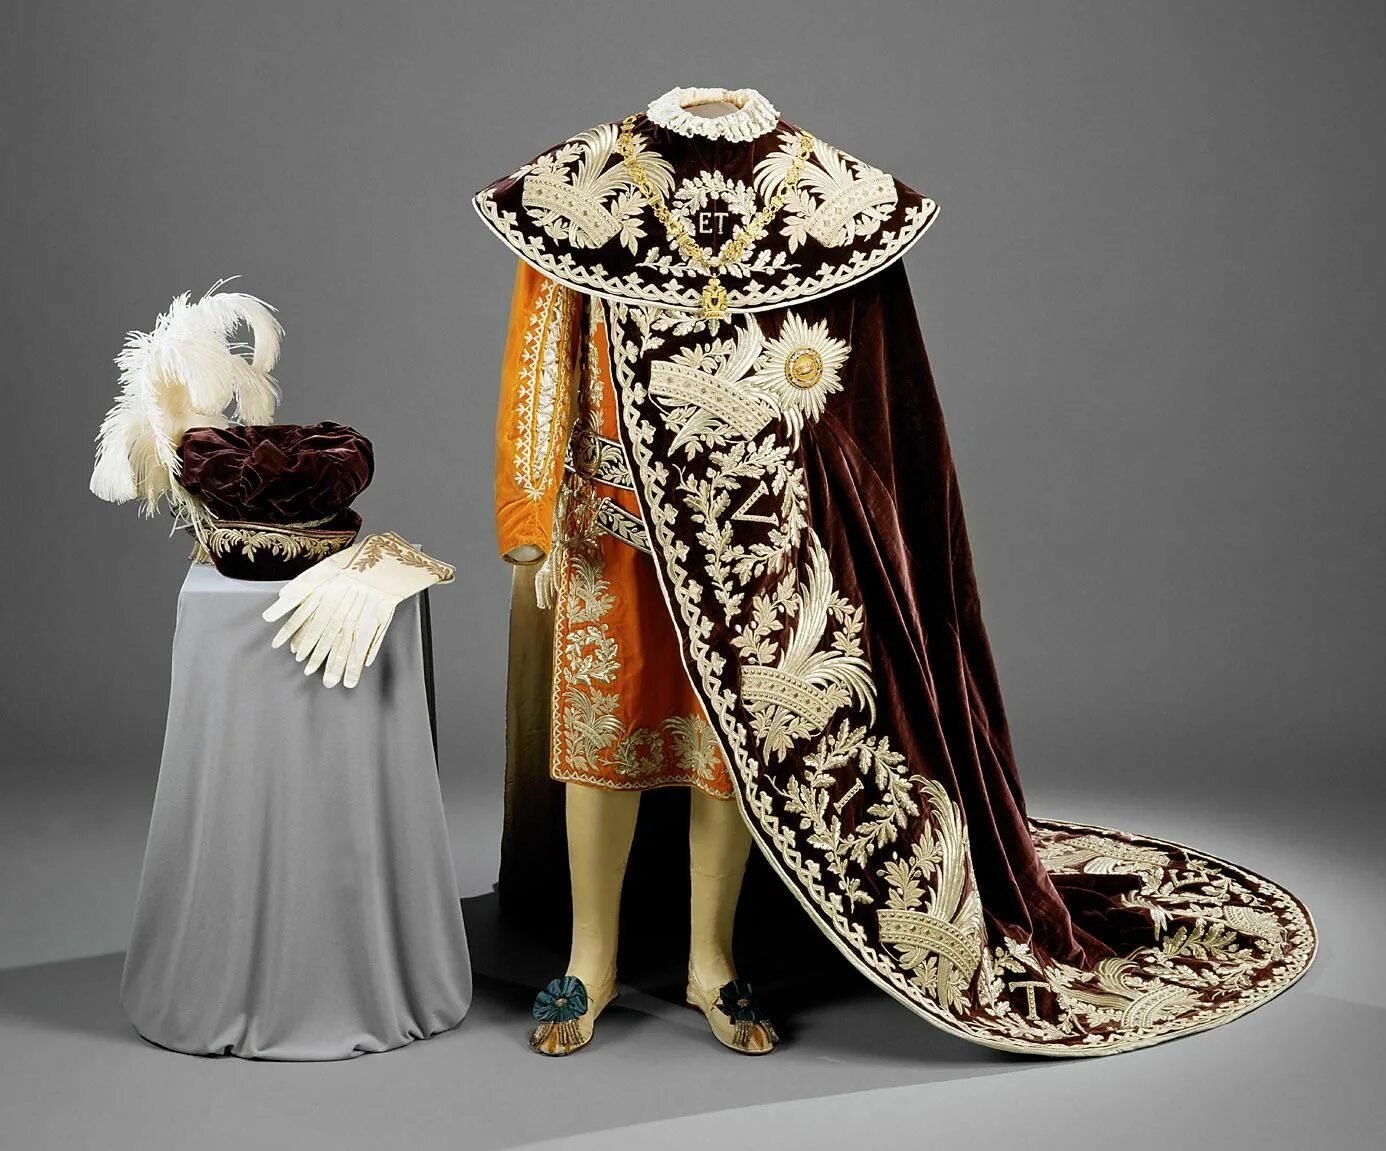 Царские одежды 5 букв. Мантия короля Англии 17-18 века. Мантия Ломбардо-венецианских королей. Порфира Царская мантия Николая 2.